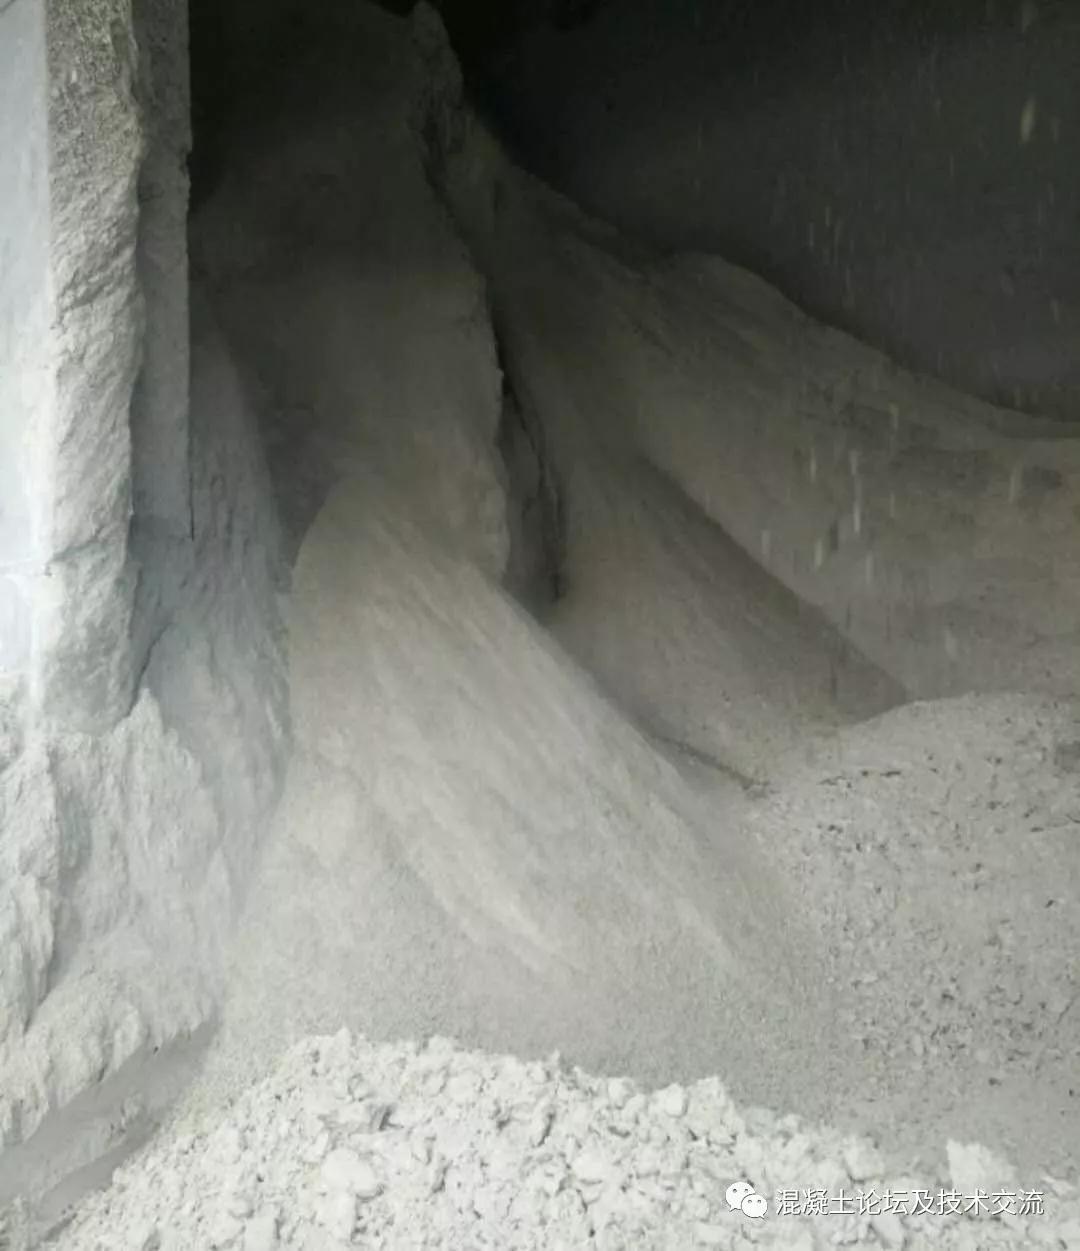 <b>脱硫灰对混凝土的影响及对策</b>